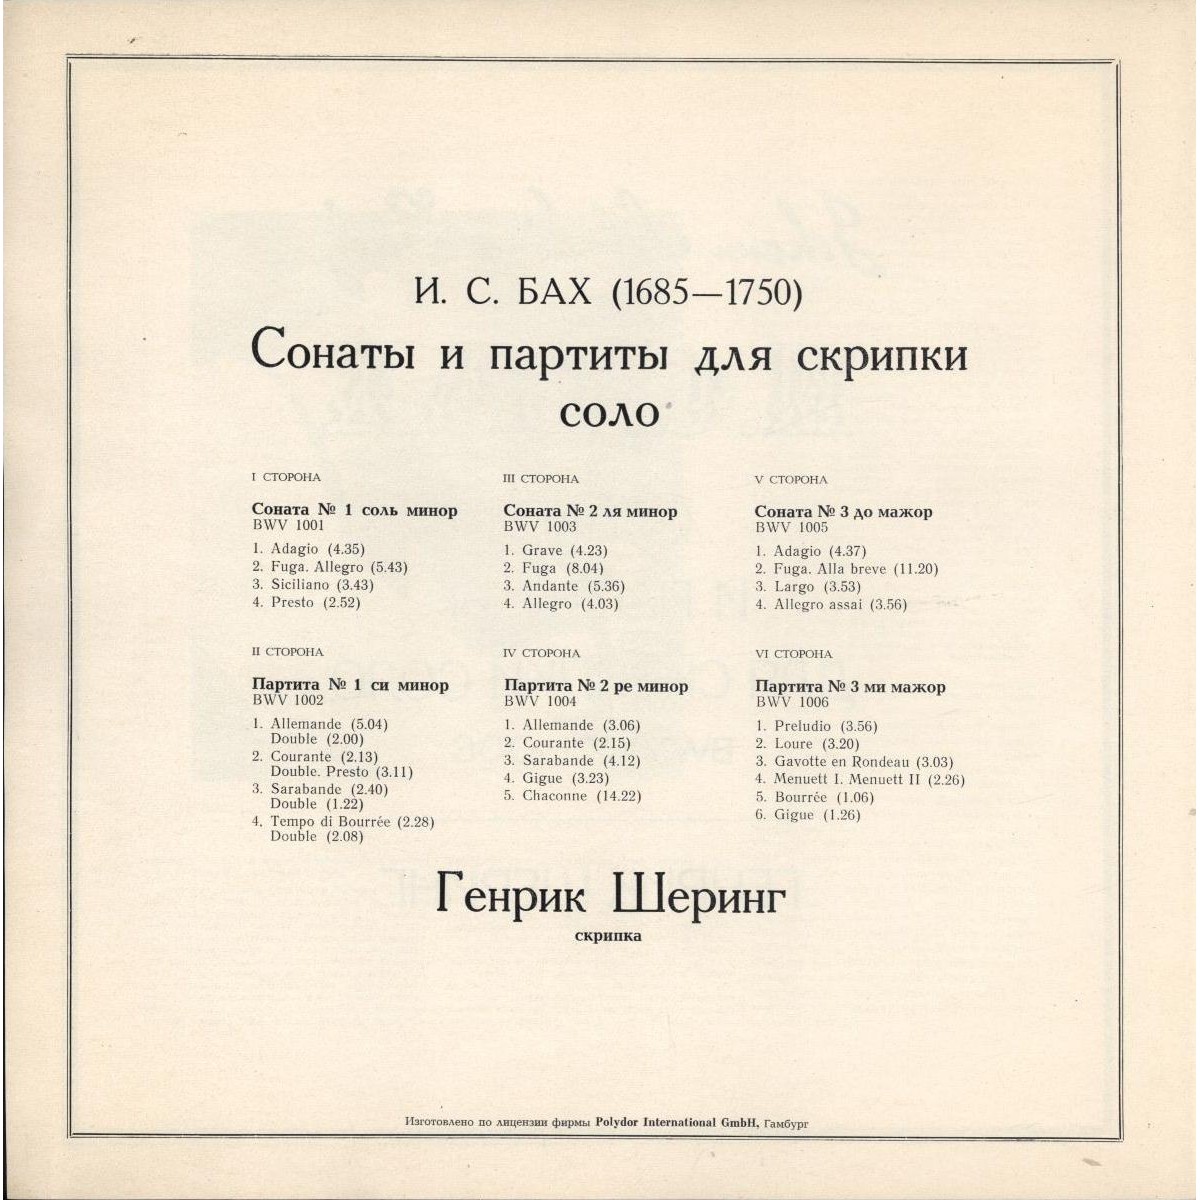 И. С. БАХ (1685—1750): Сонаты и партиты для скрипки соло (Г. Шеринг)